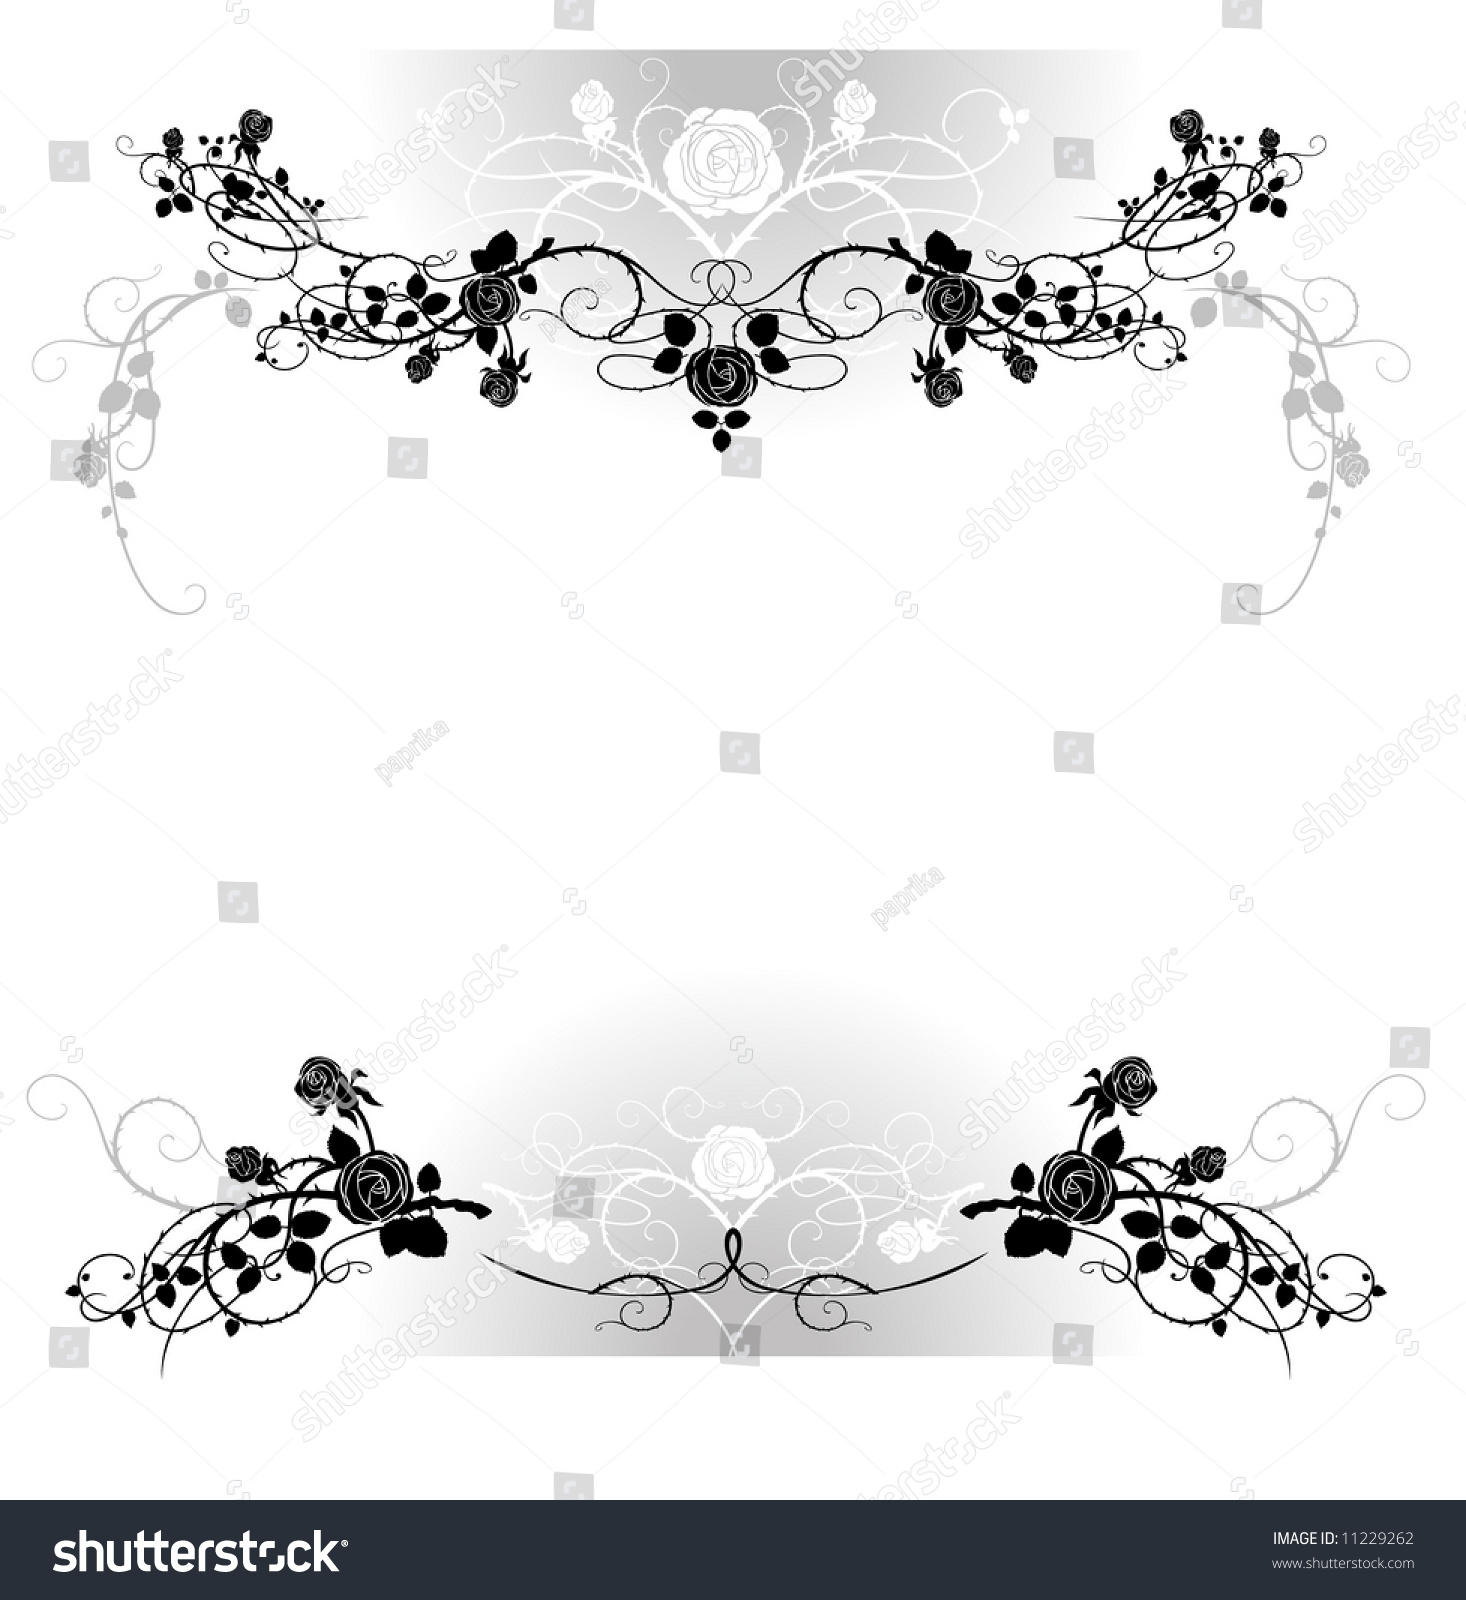 Vector Flower Frame - 11229262 : Shutterstock